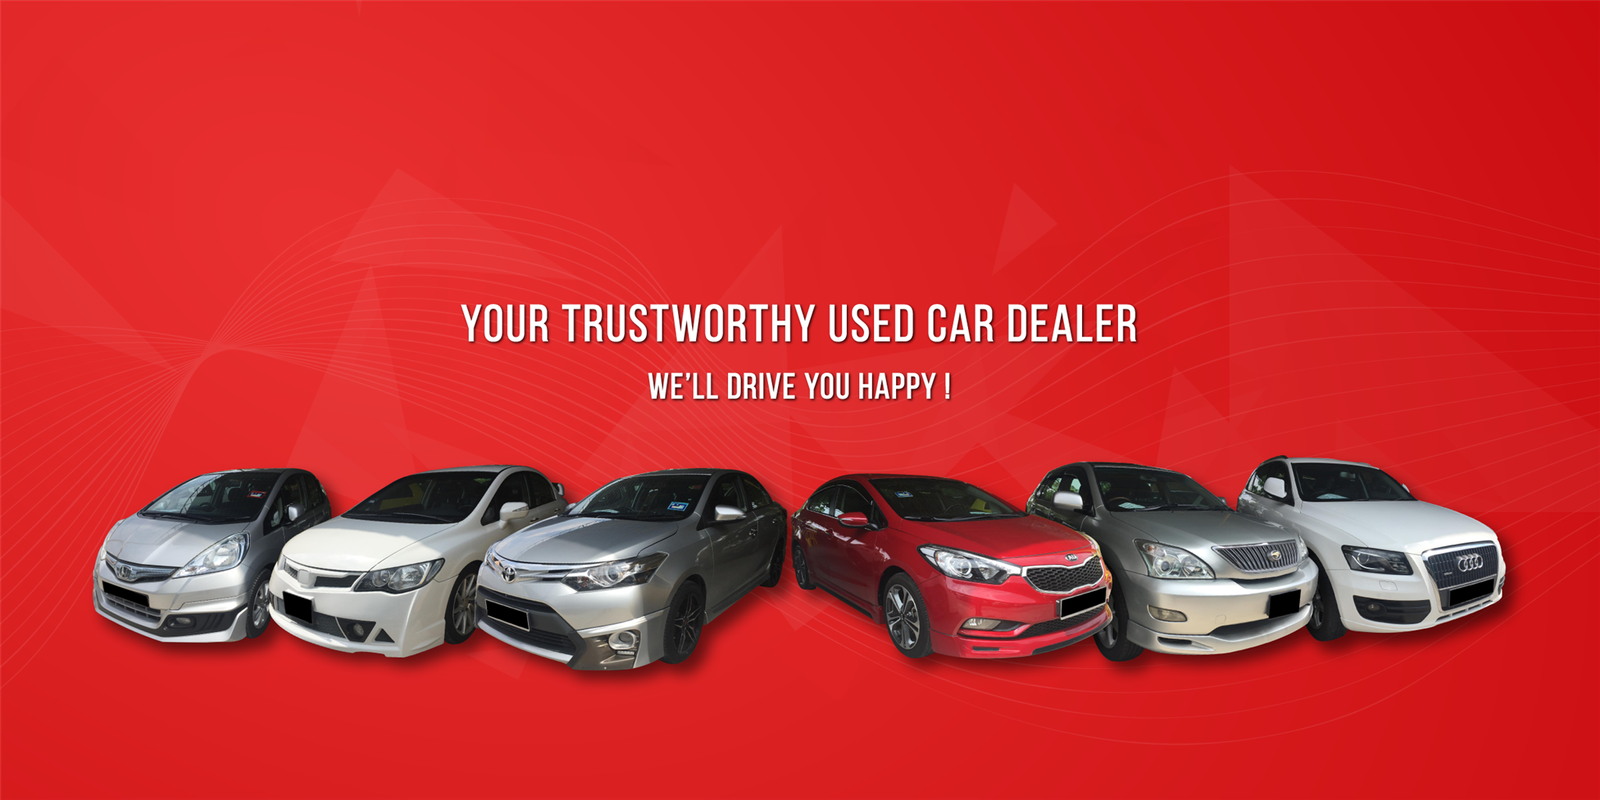 LINKEDKARS MOTOR SDN BHD – Your Trustworthy Used Car Dealer